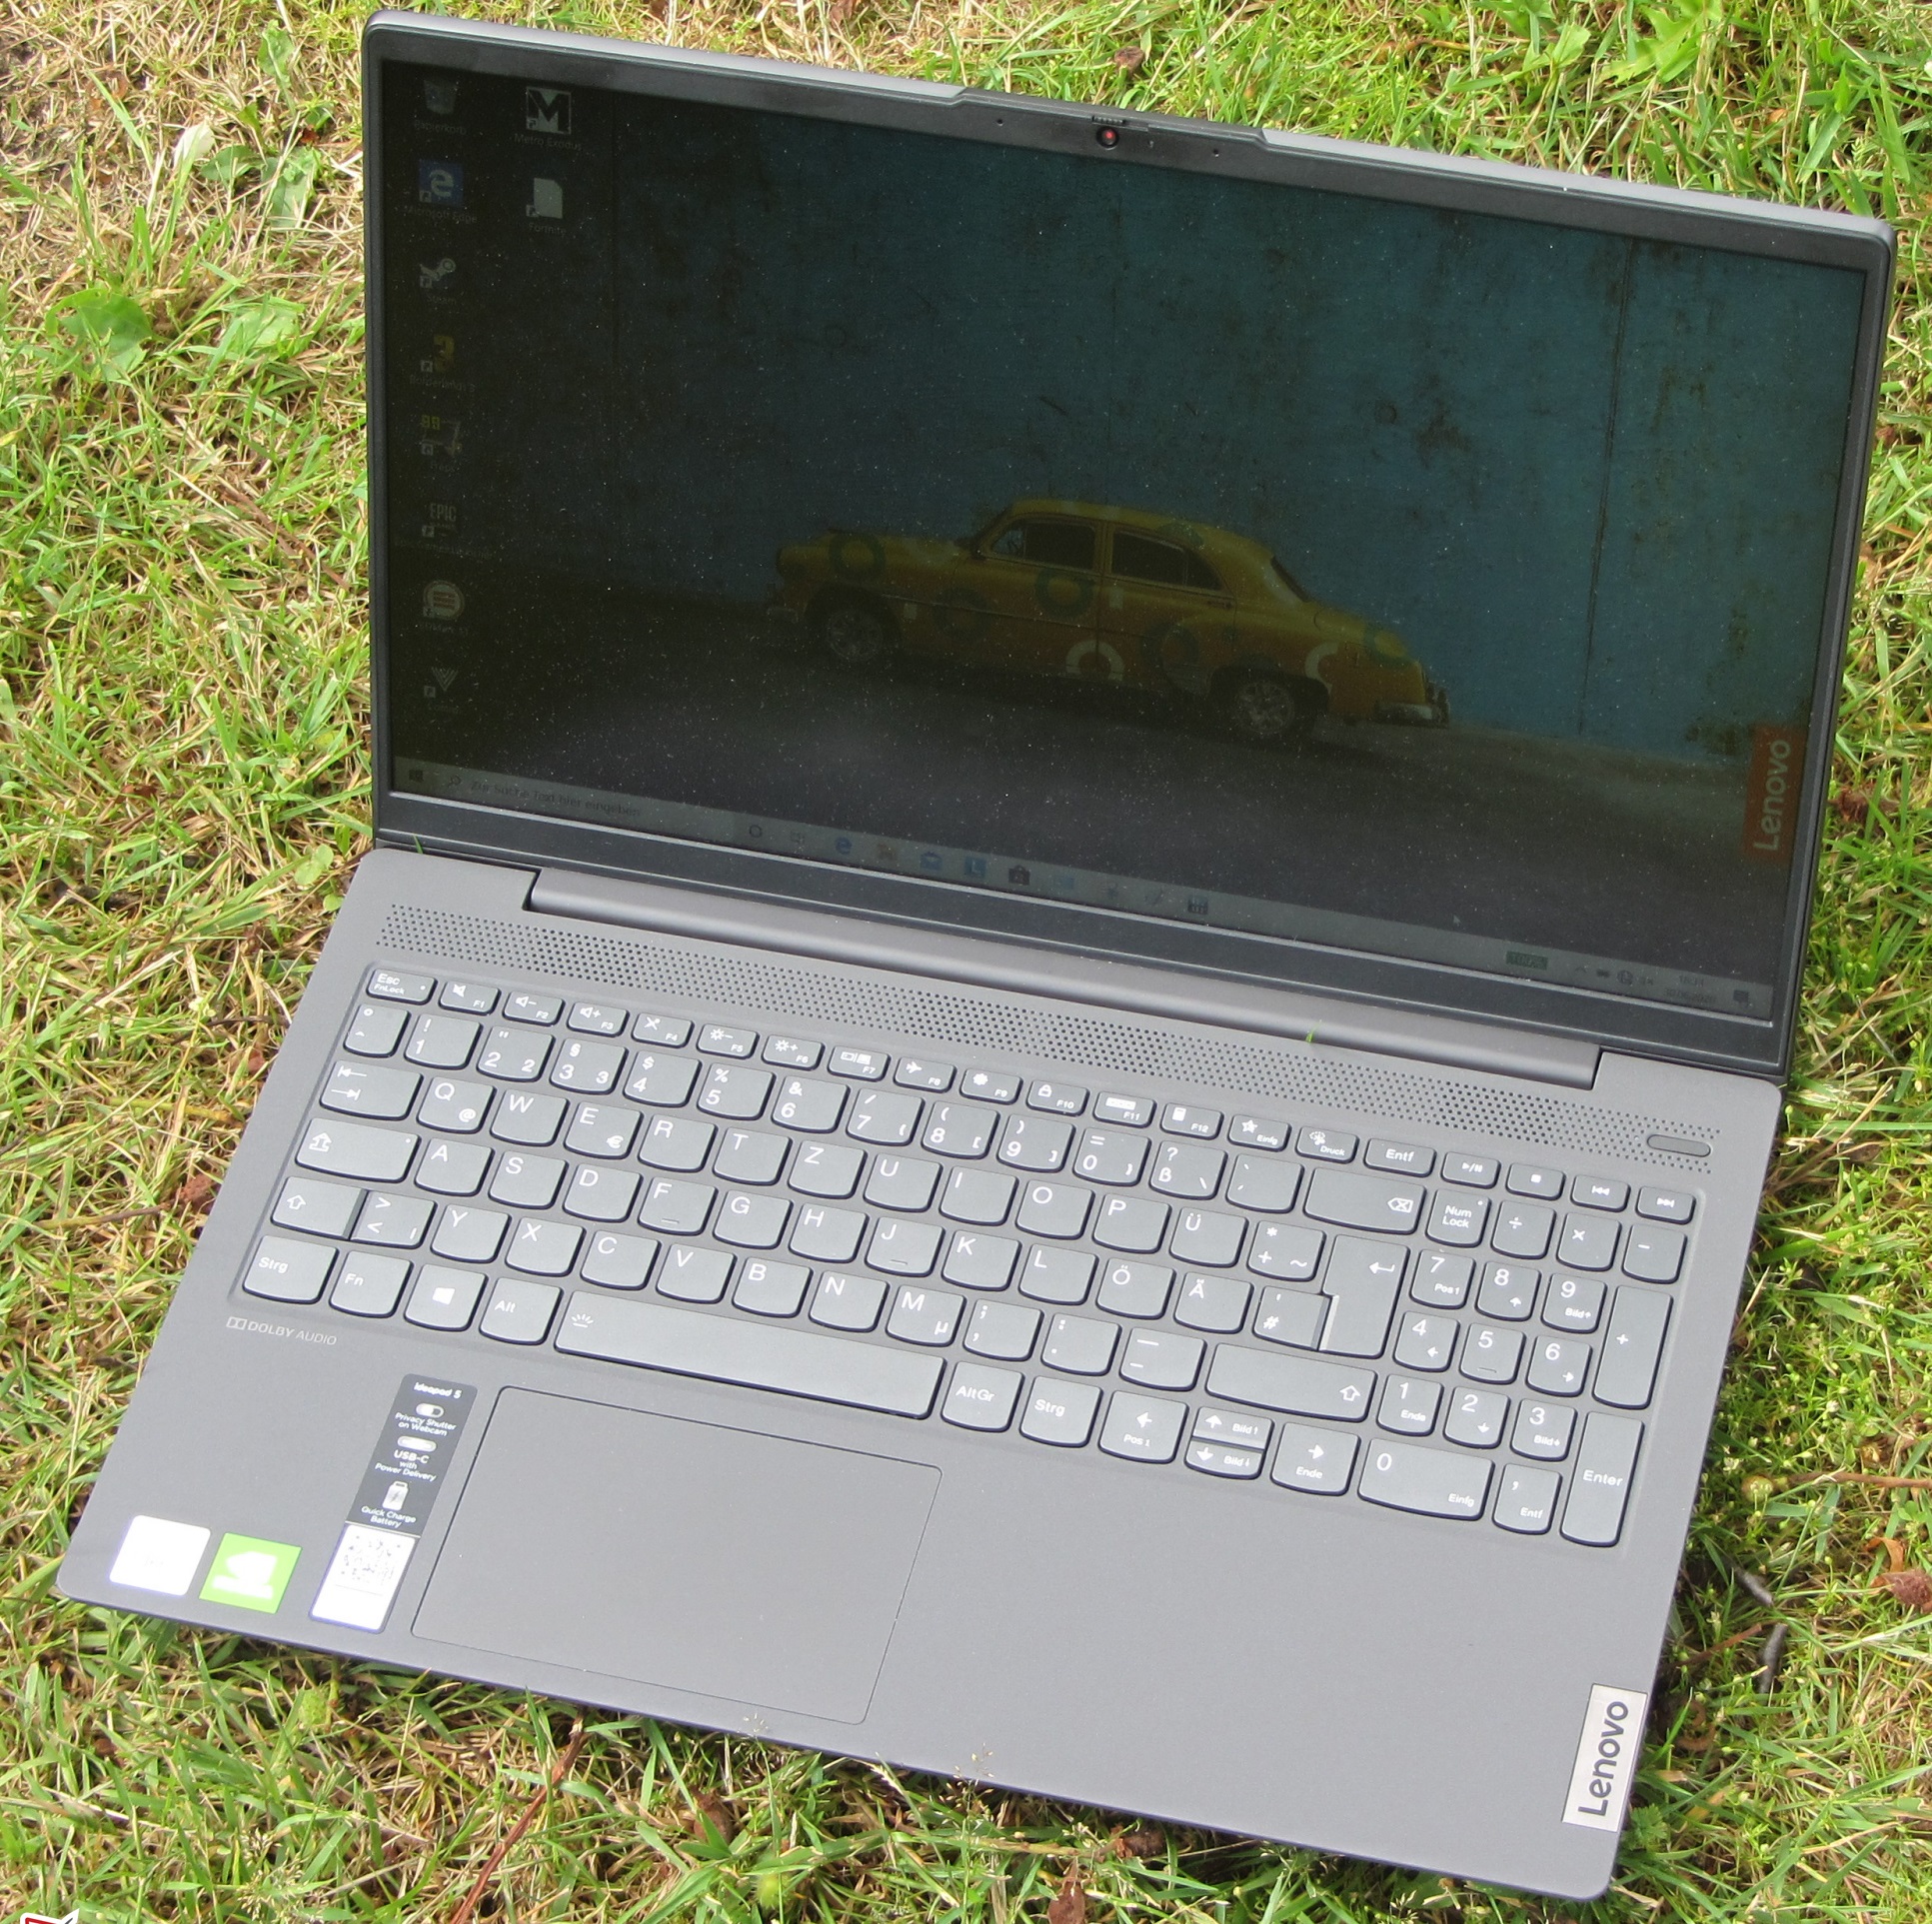 Lenovo IdeaPad 5 15ILT05 Laptop Price in Pakistan